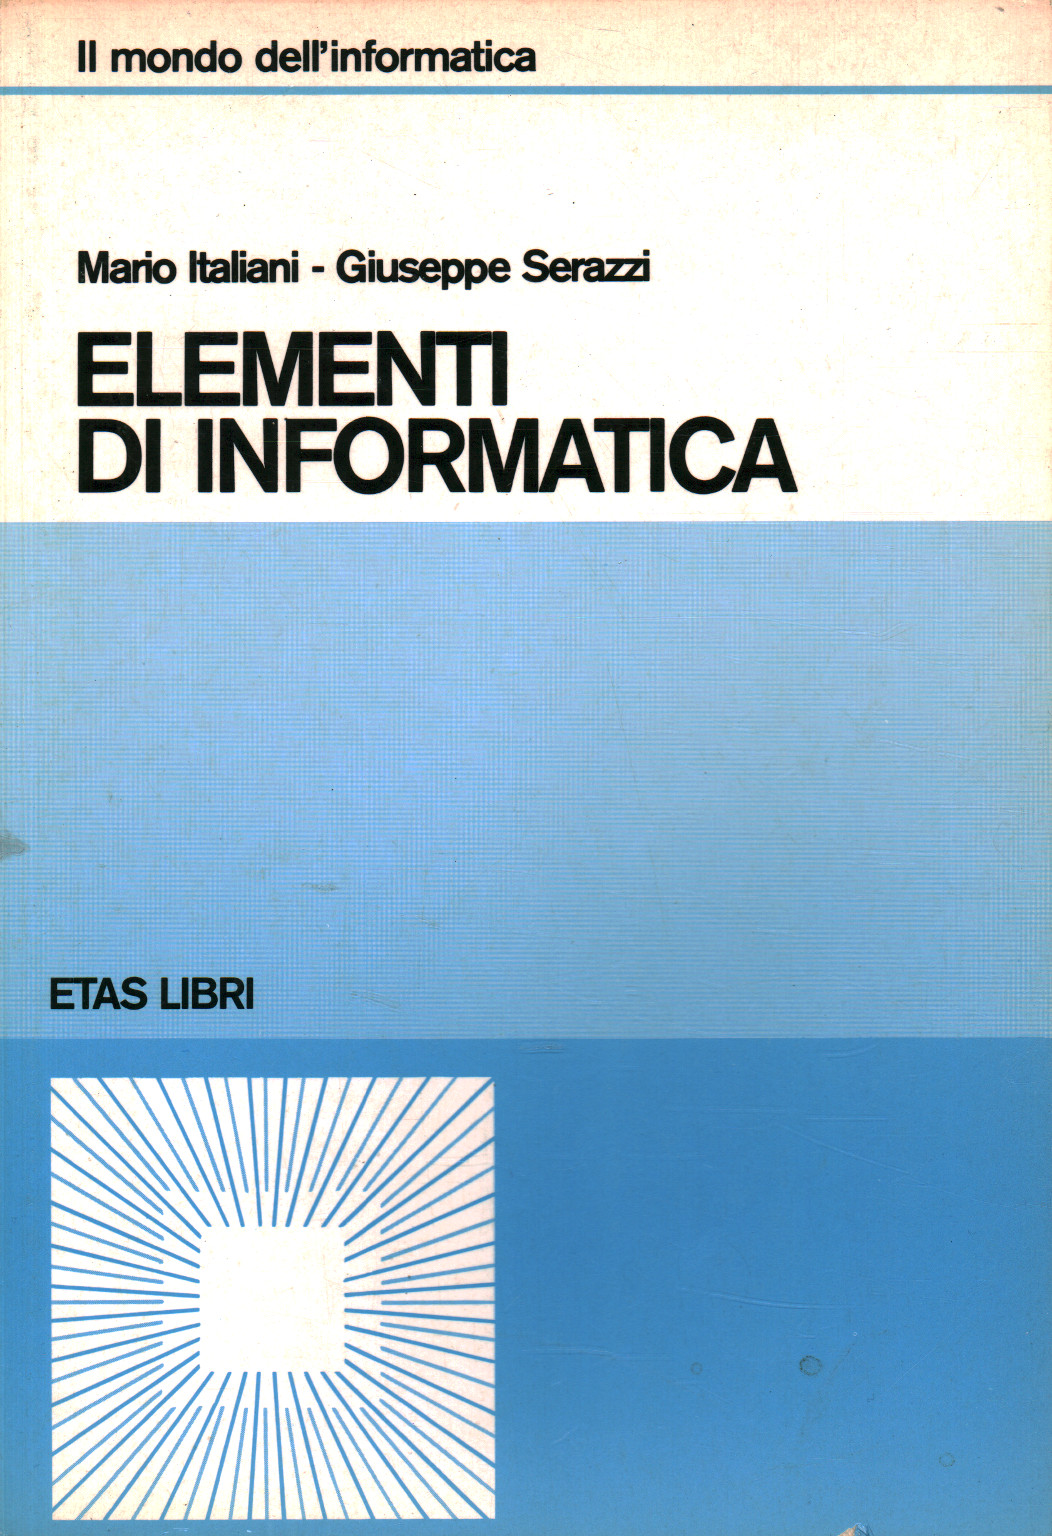 Elementi di informatica, M.Italiani G.Serazzi